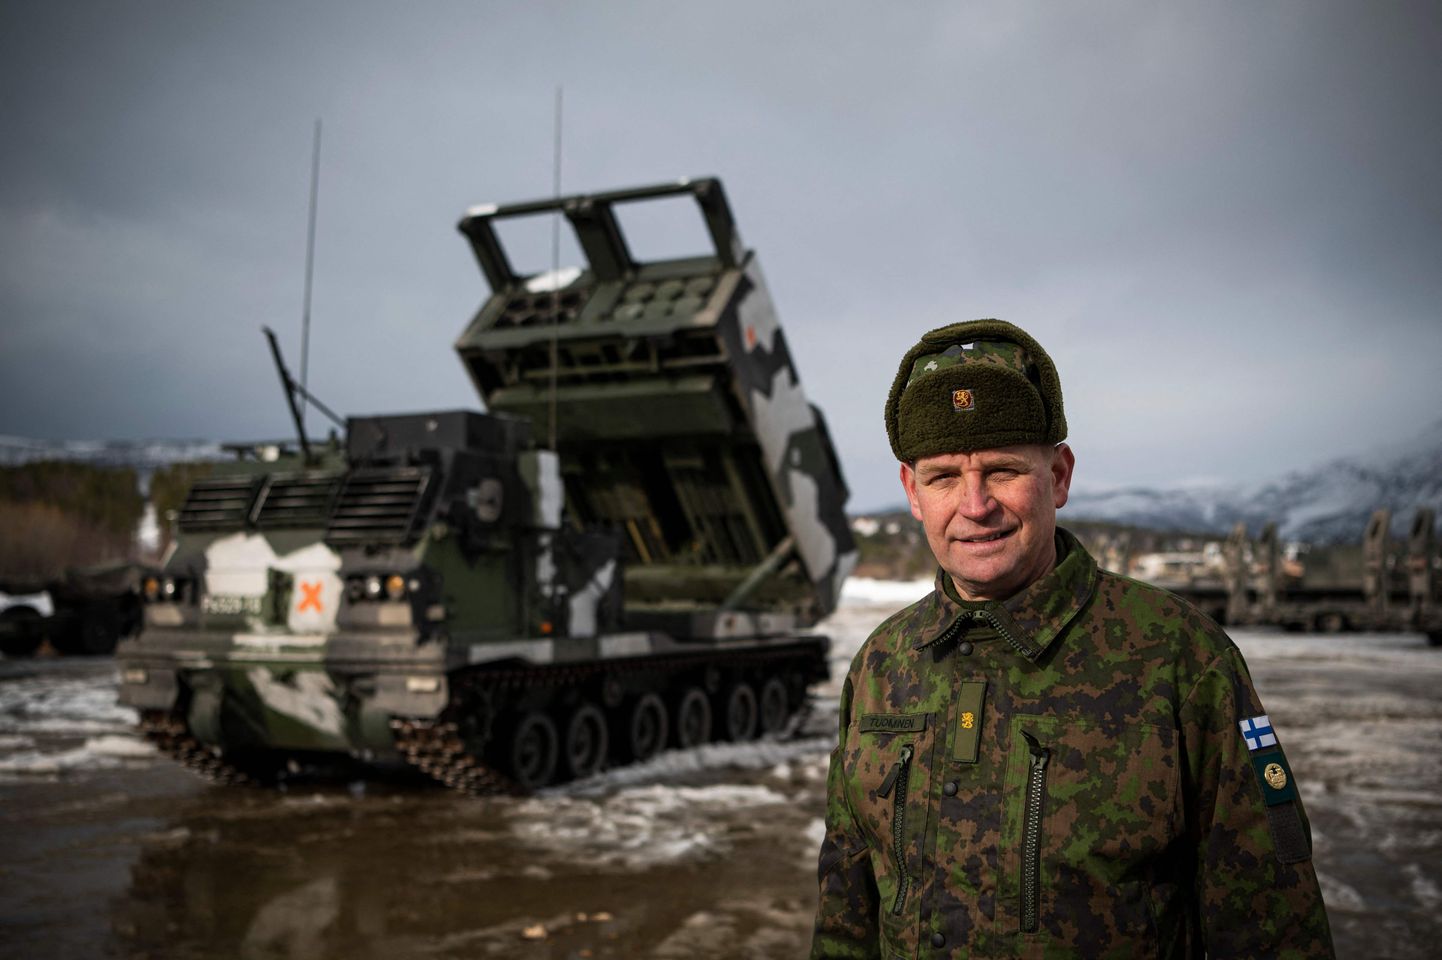 Бригадный генерал Сил обороны Финляндии Ману Туоминен возле финской реактивной системы залпового огня M270. Международные военные учения Cold Response 22 в Сетермуэне, к северу от Норвегии, 22 марта 2022 года.